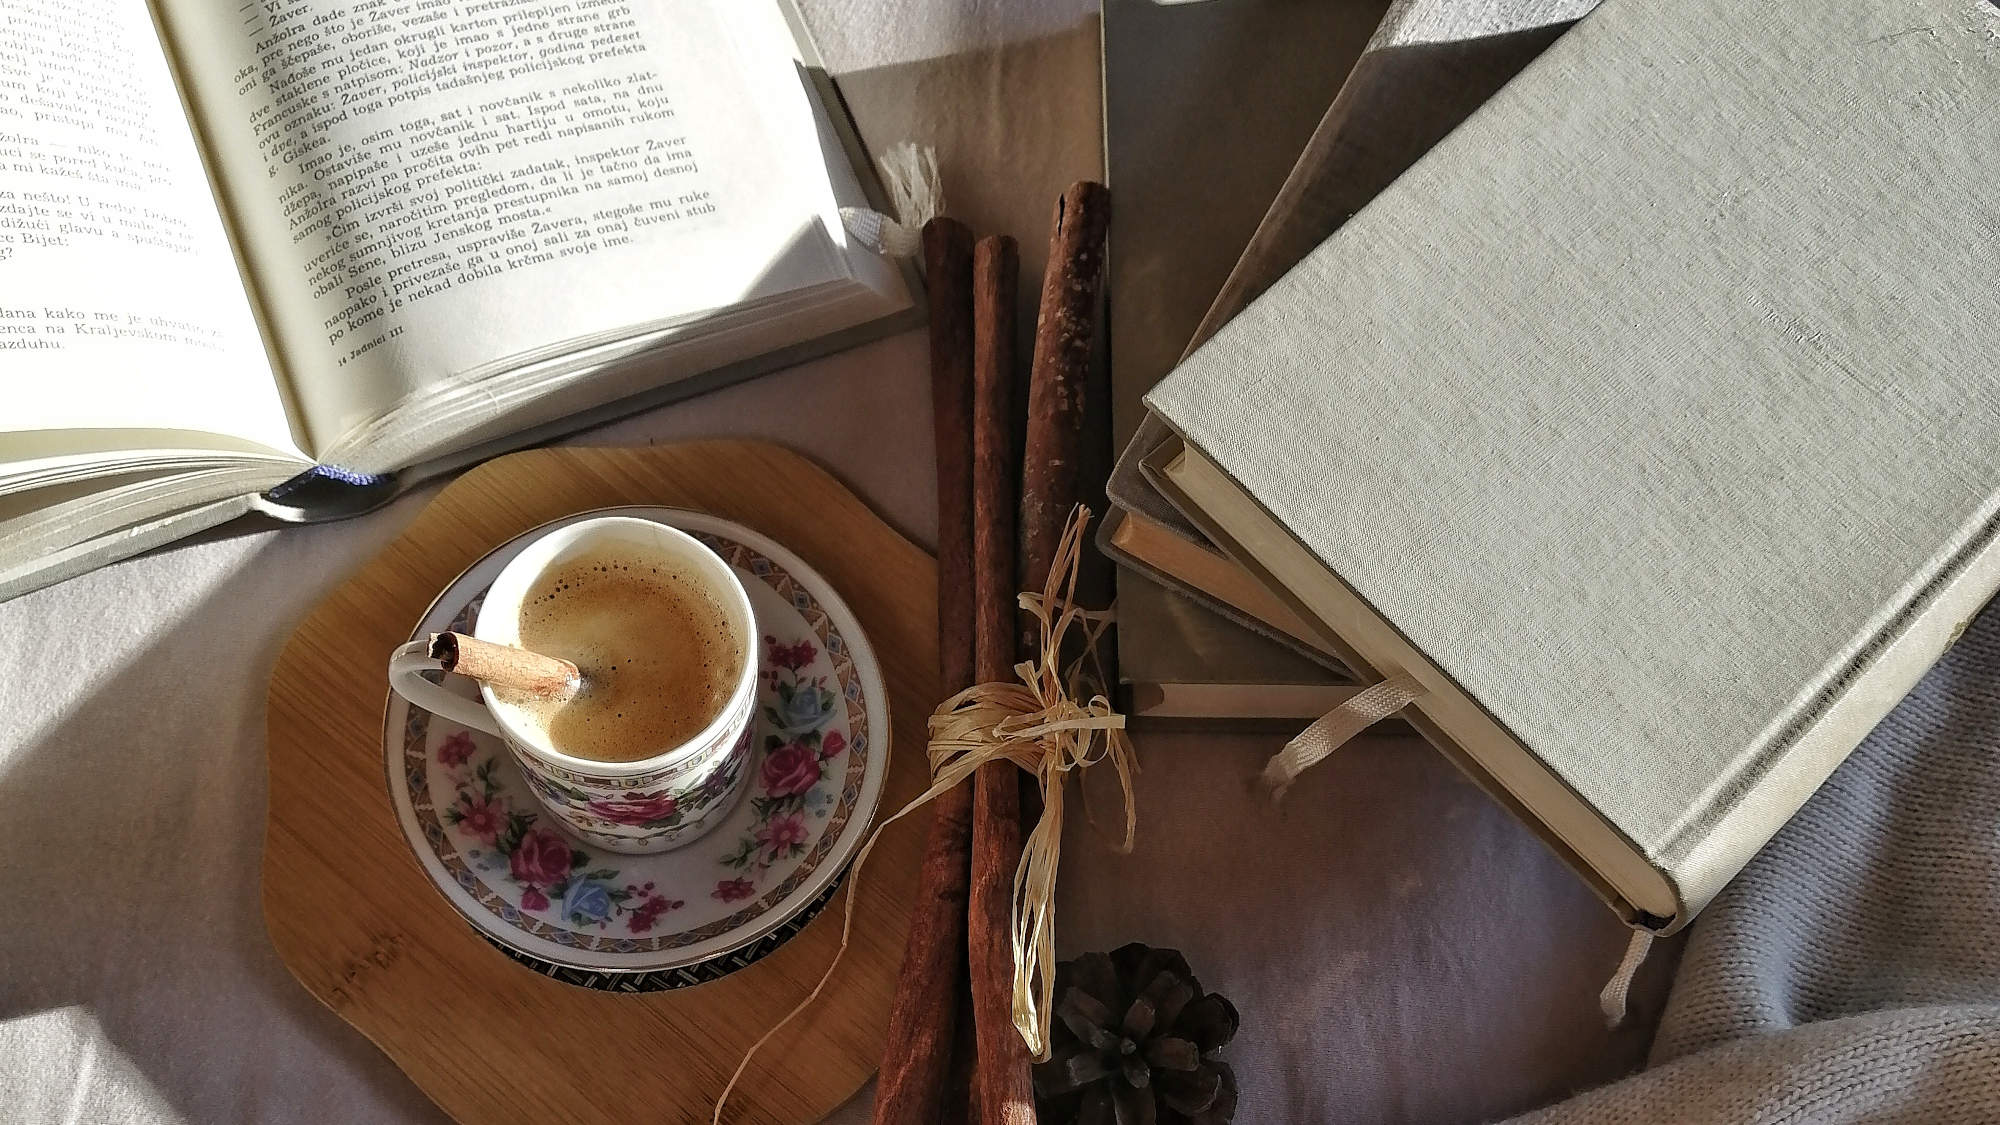 Ein Tisch mit einem offenen Buch, einigen geschlossenen Büchern auf einem Stapel, sowie einer Kaffeetasse darauf